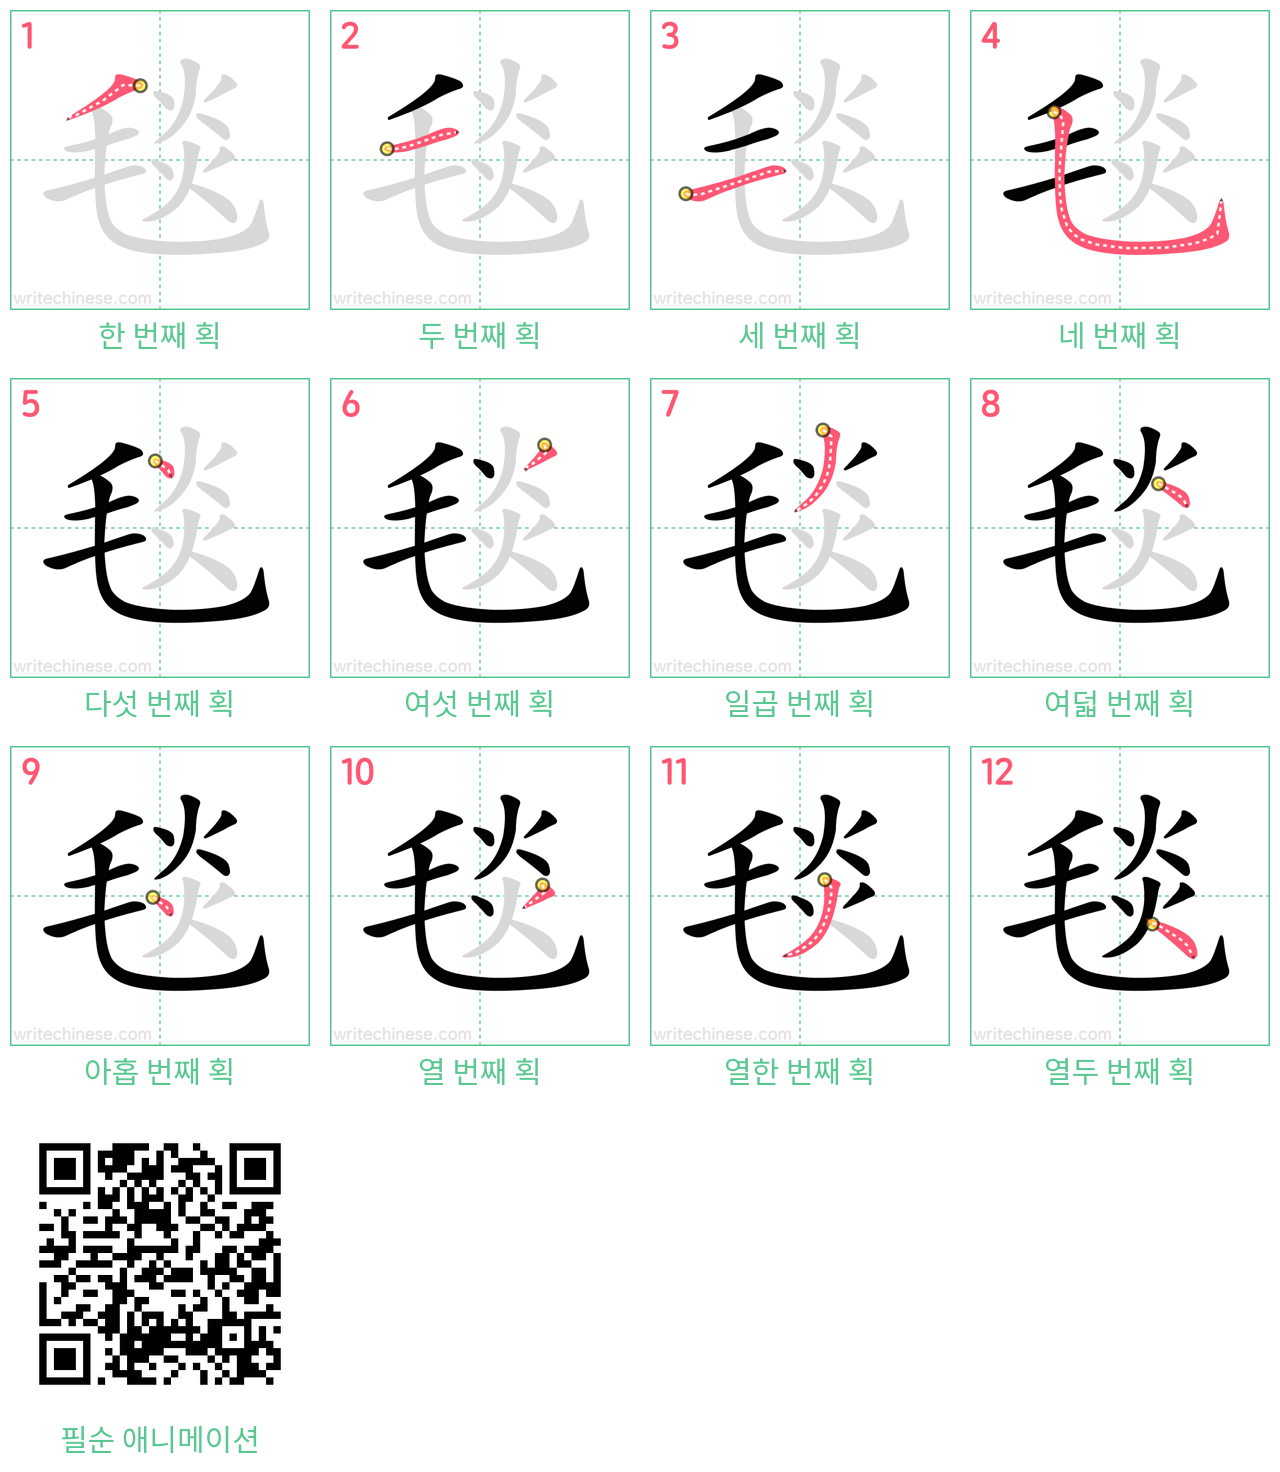 毯 step-by-step stroke order diagrams